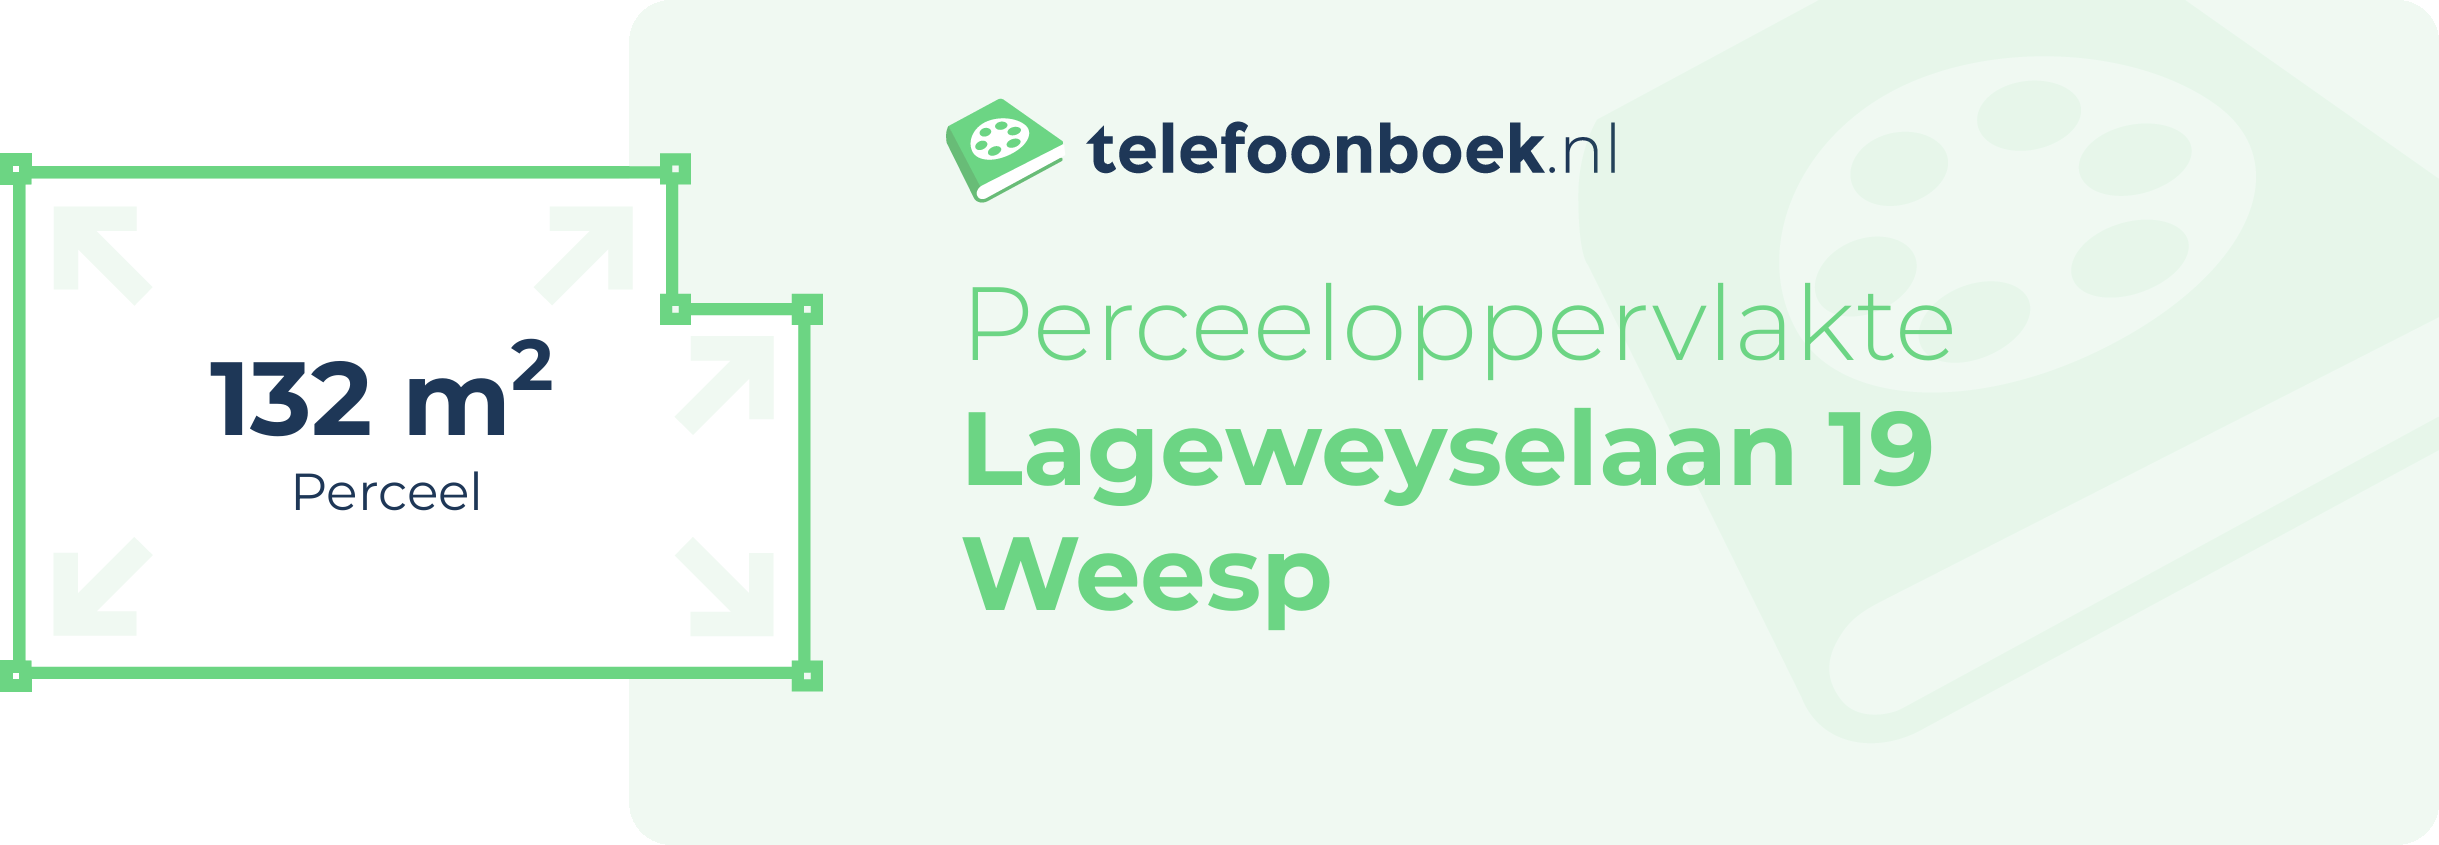 Perceeloppervlakte Lageweyselaan 19 Weesp